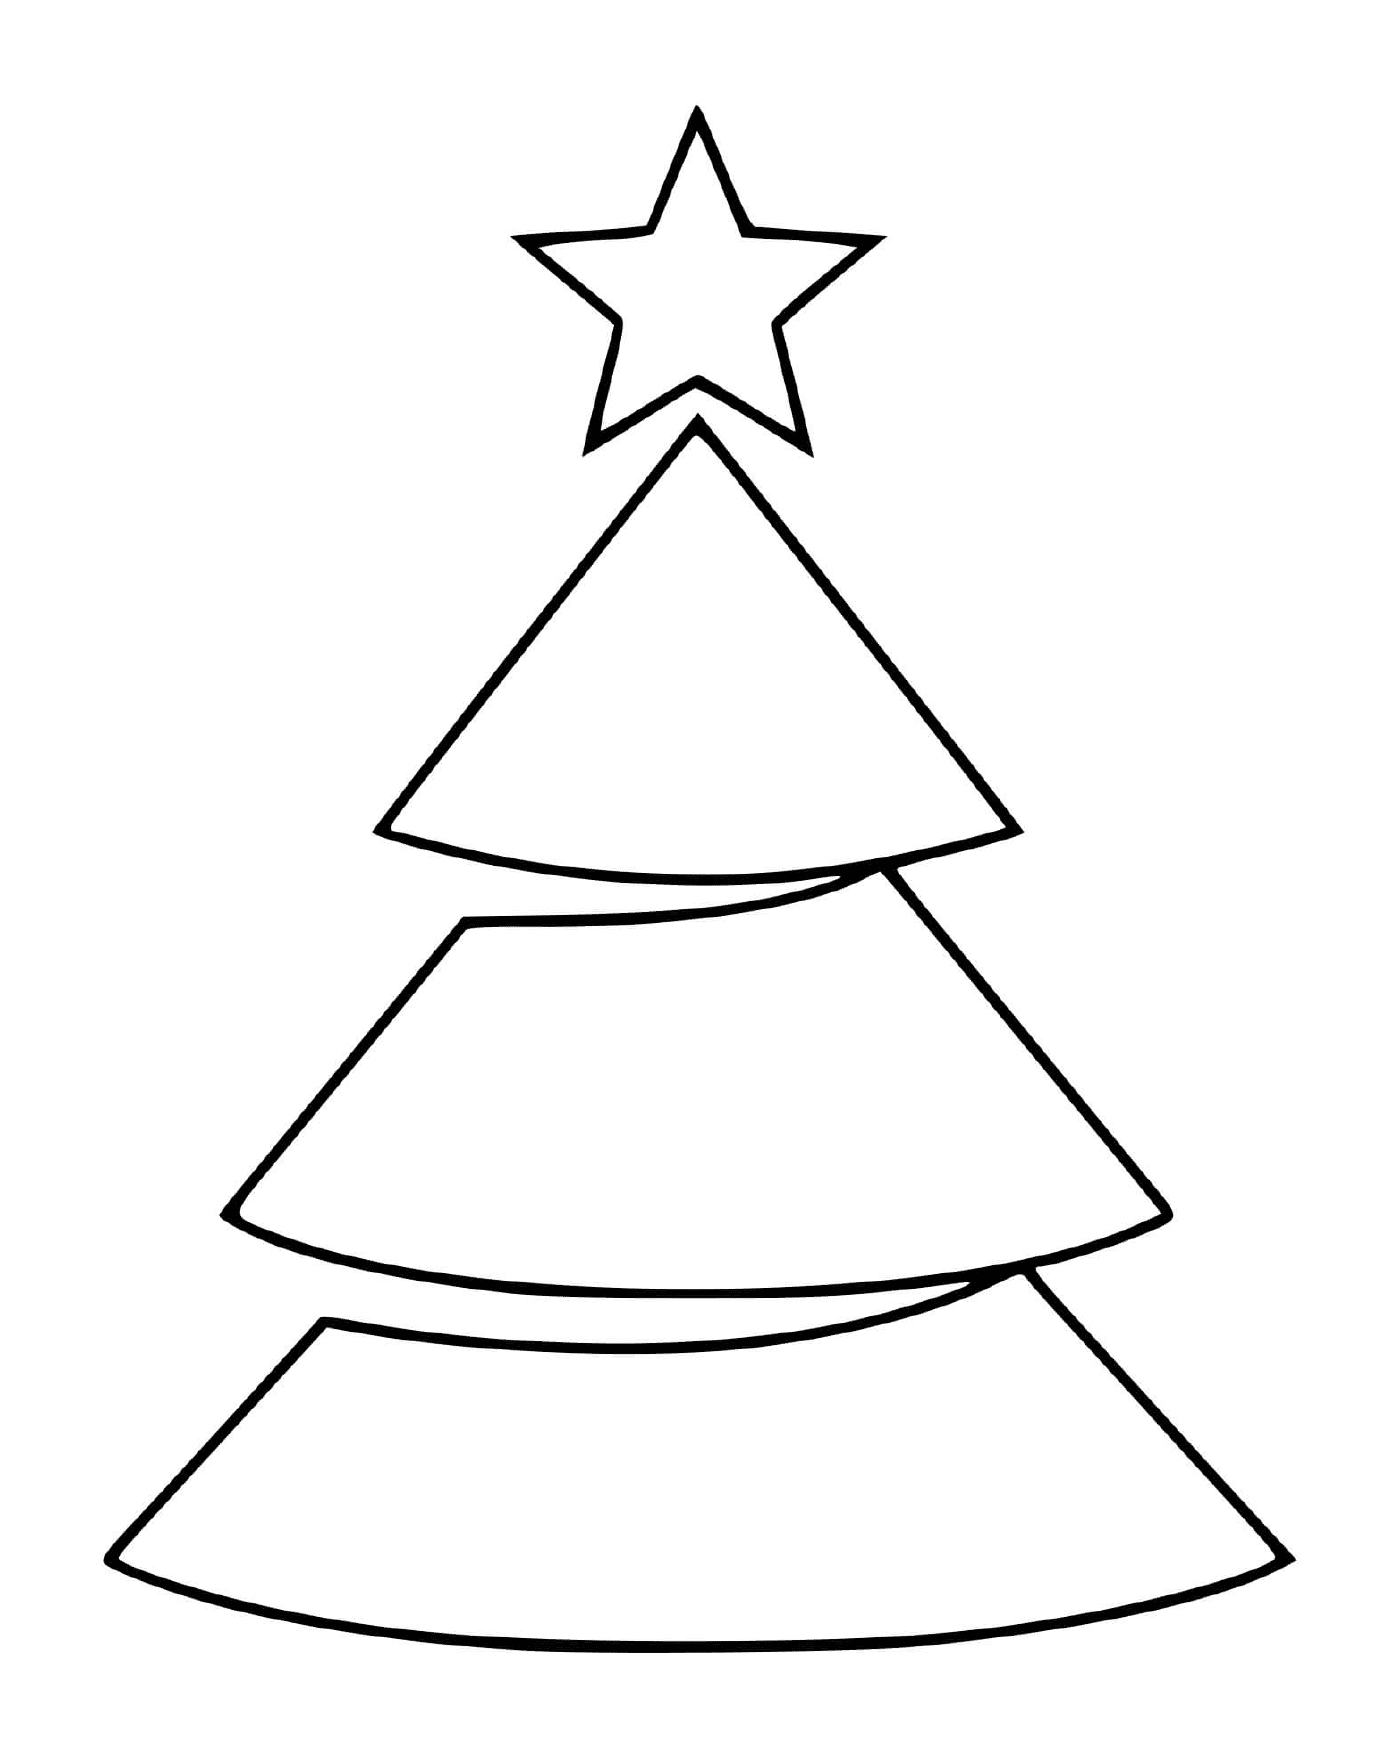  Einfacher Baum mit leichtem Stern 